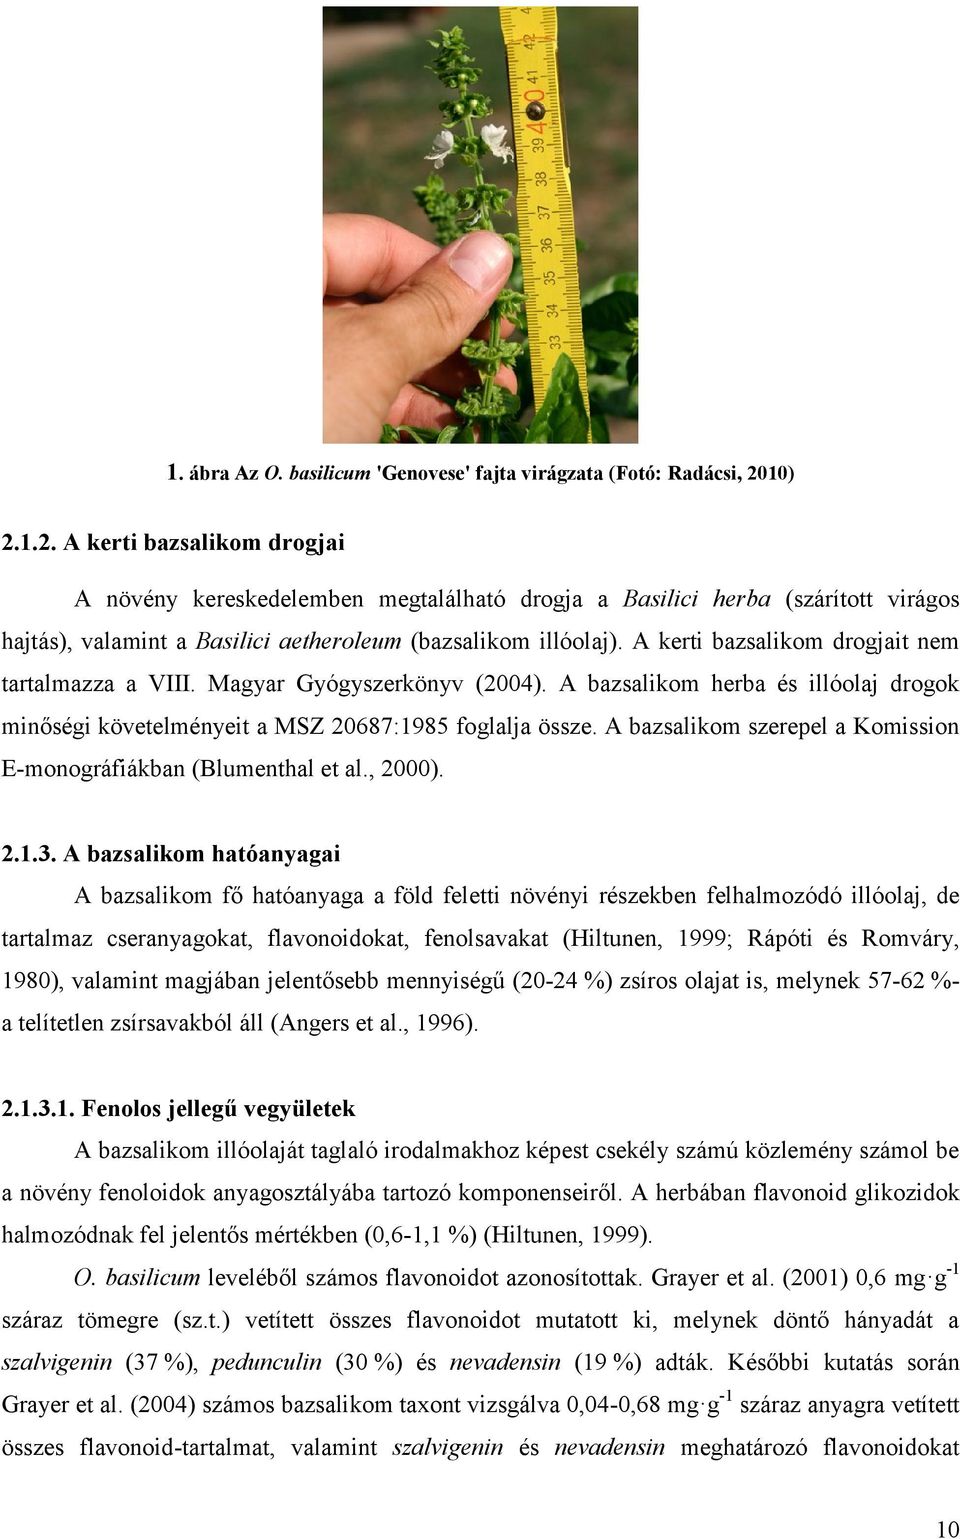 A kerti bazsalikom drogjait nem tartalmazza a VIII. Magyar Gyógyszerkönyv (2004). A bazsalikom herba és illóolaj drogok minőségi követelményeit a MSZ 20687:1985 foglalja össze.